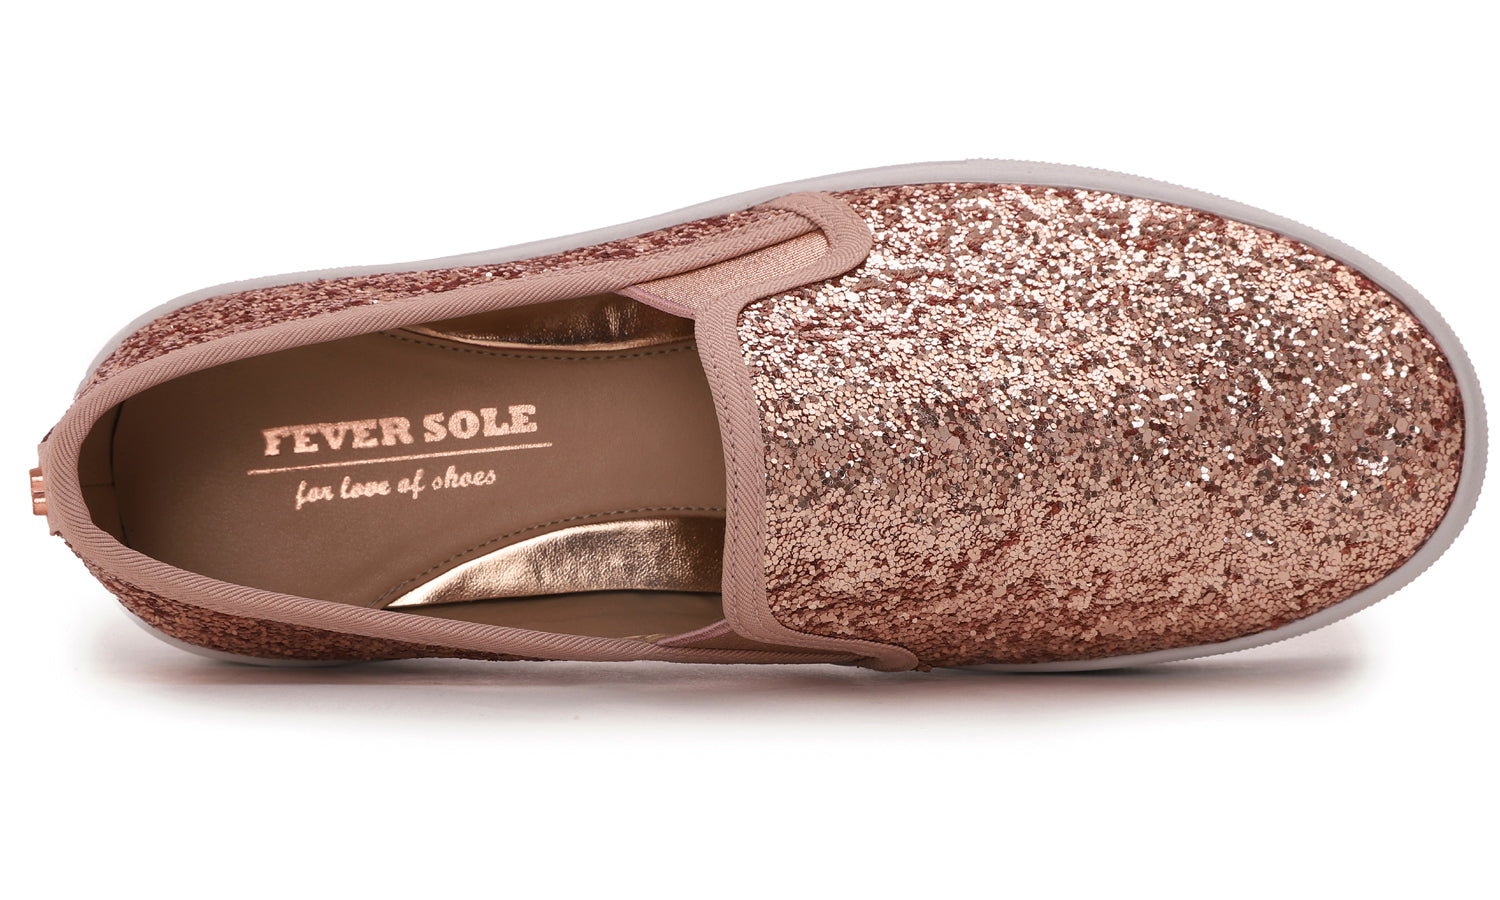 Feversole Women's Glitter Rose Gold Platform Slip On Sneaker Casual Flat Loafers